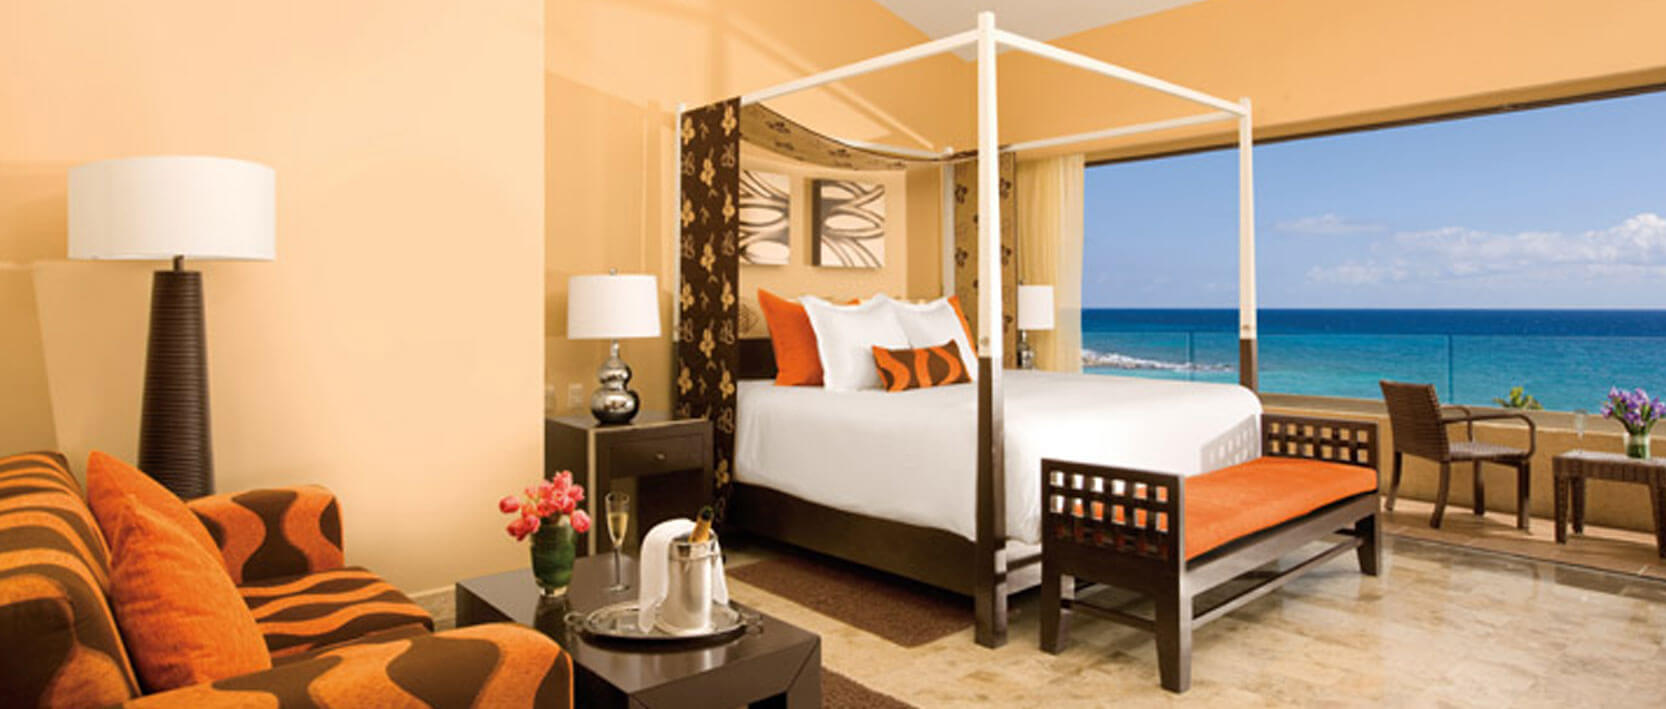 Dreams Puerto Aventuras Resort Accommodations - Deluxe Ocean View